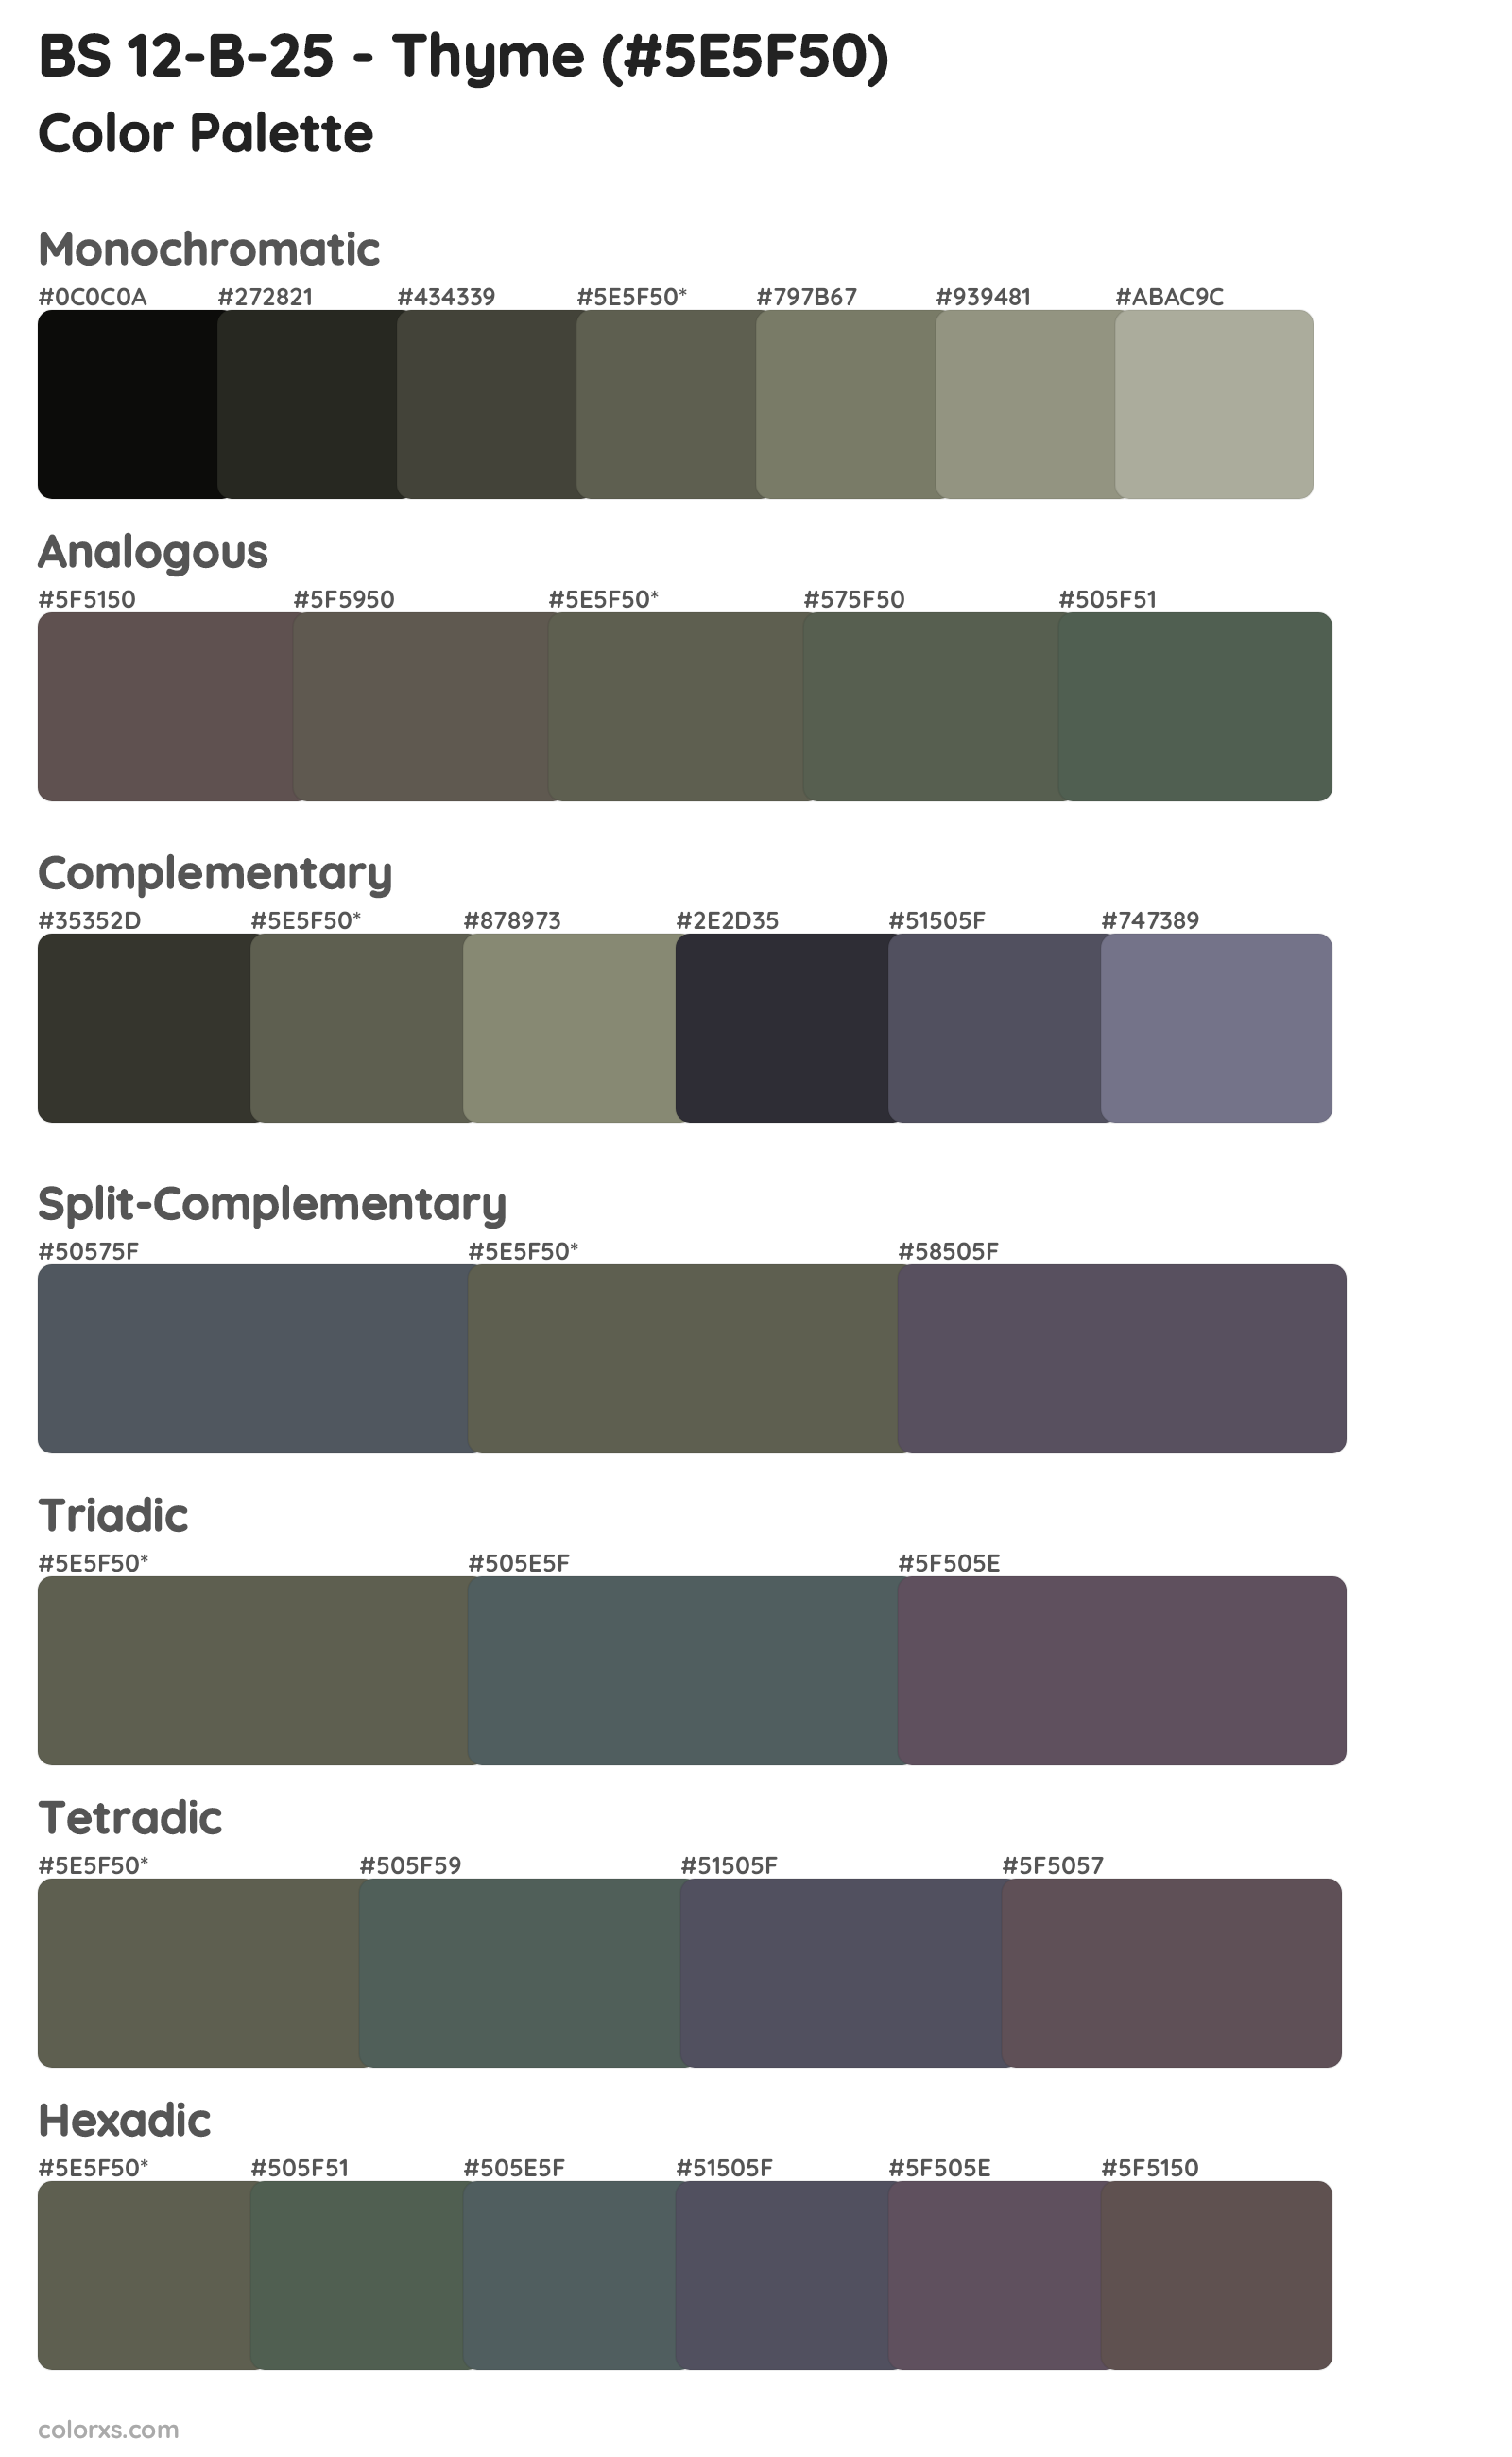 BS 12-B-25 - Thyme Color Scheme Palettes